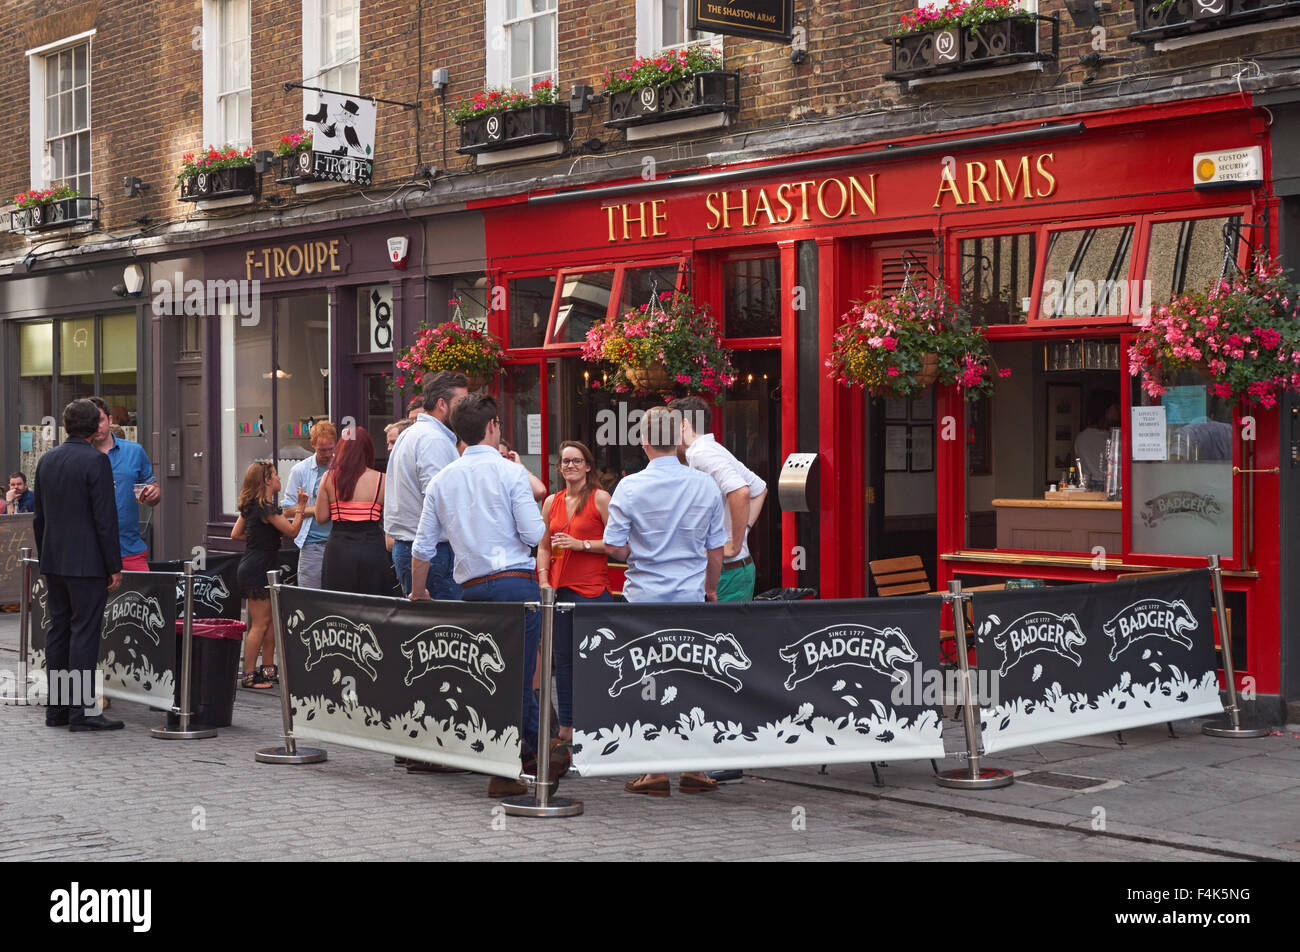 Les personnes qui boivent à l'extérieur de l'Shaston Arms pub à Soho, Londres Angleterre Royaume-Uni UK Banque D'Images